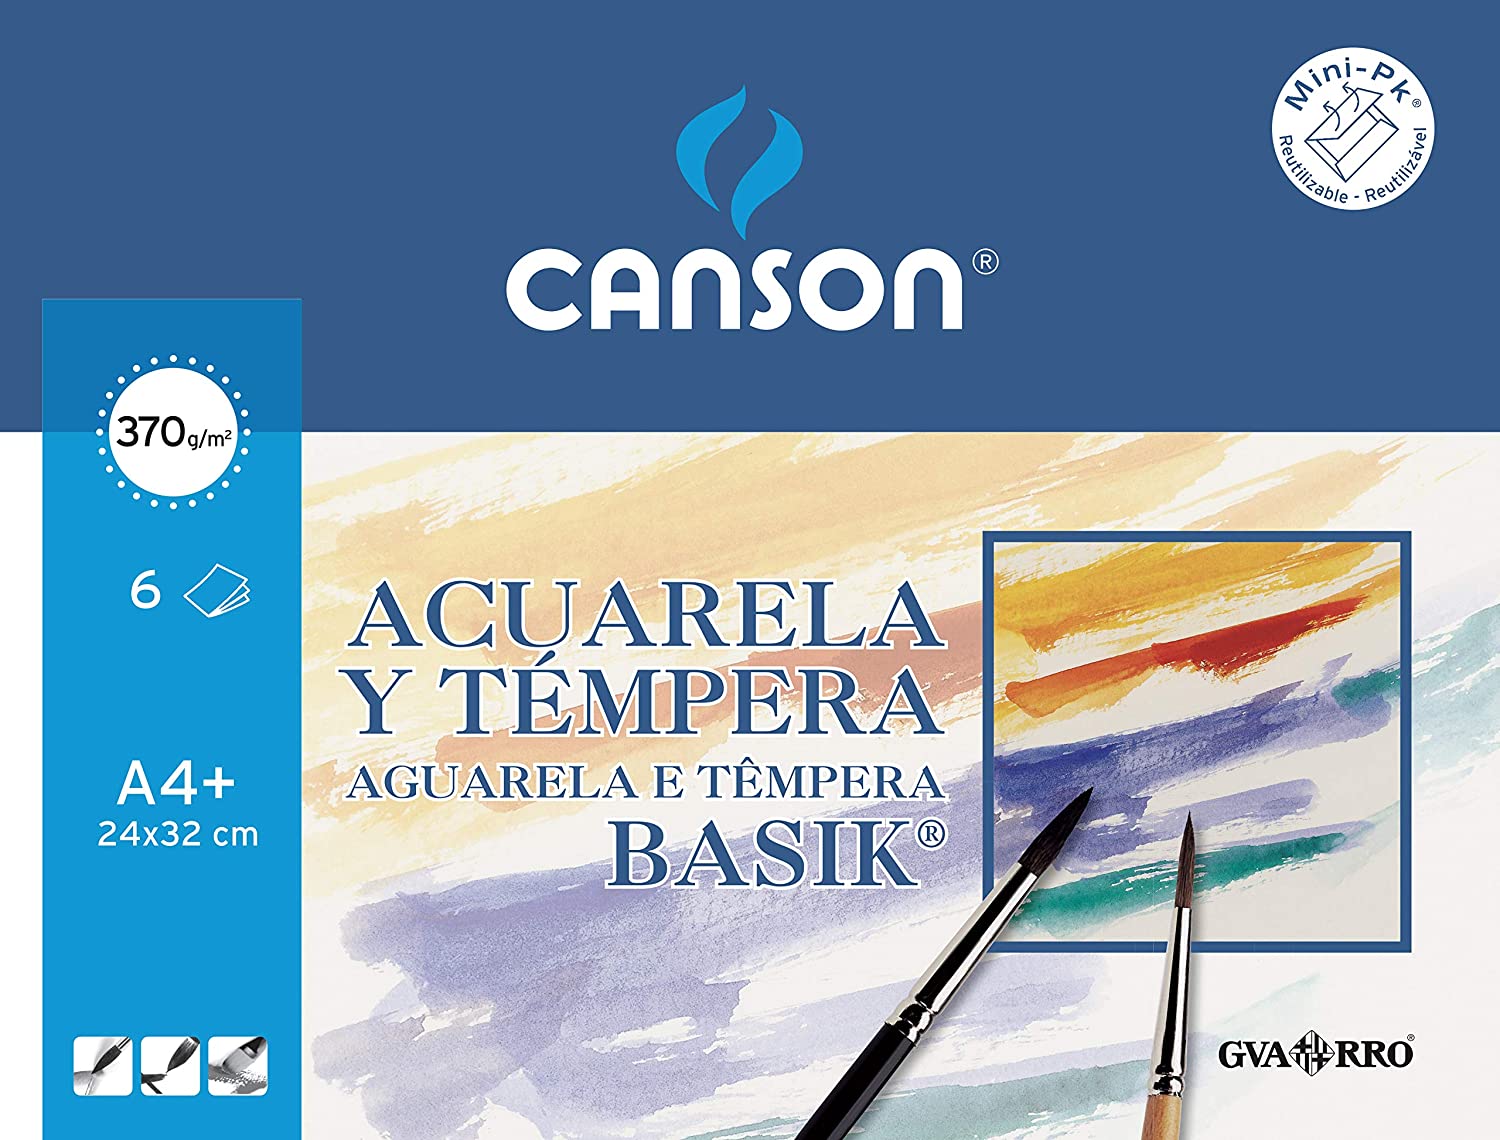 Canson - Block Papel para Acuarela, 6 hojas, Blanco, A4